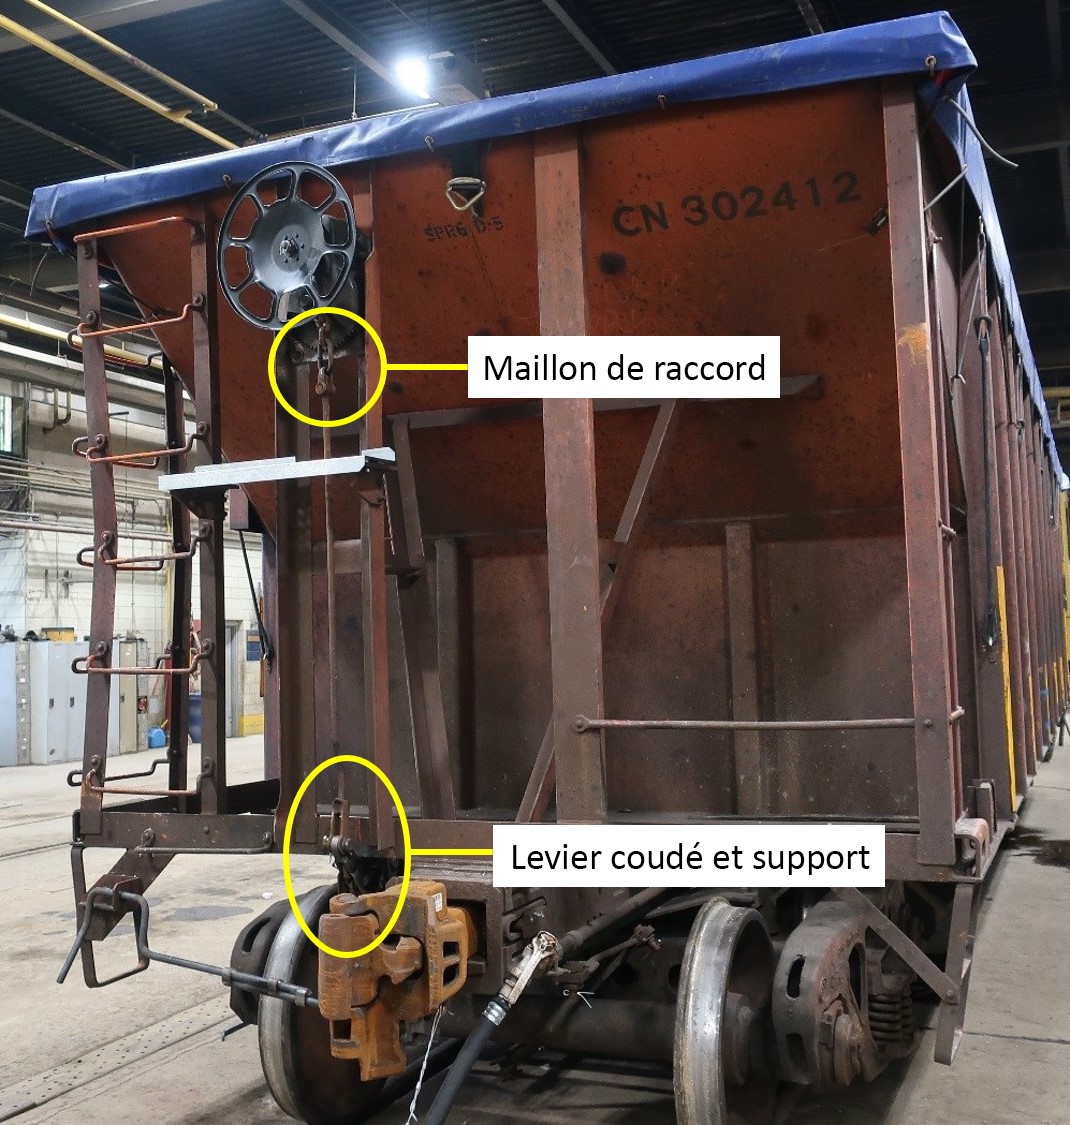 Wagon CN 302412 avec le frein à main serré et le support du levier coudé coupé pour simuler un bris (Source : BST)